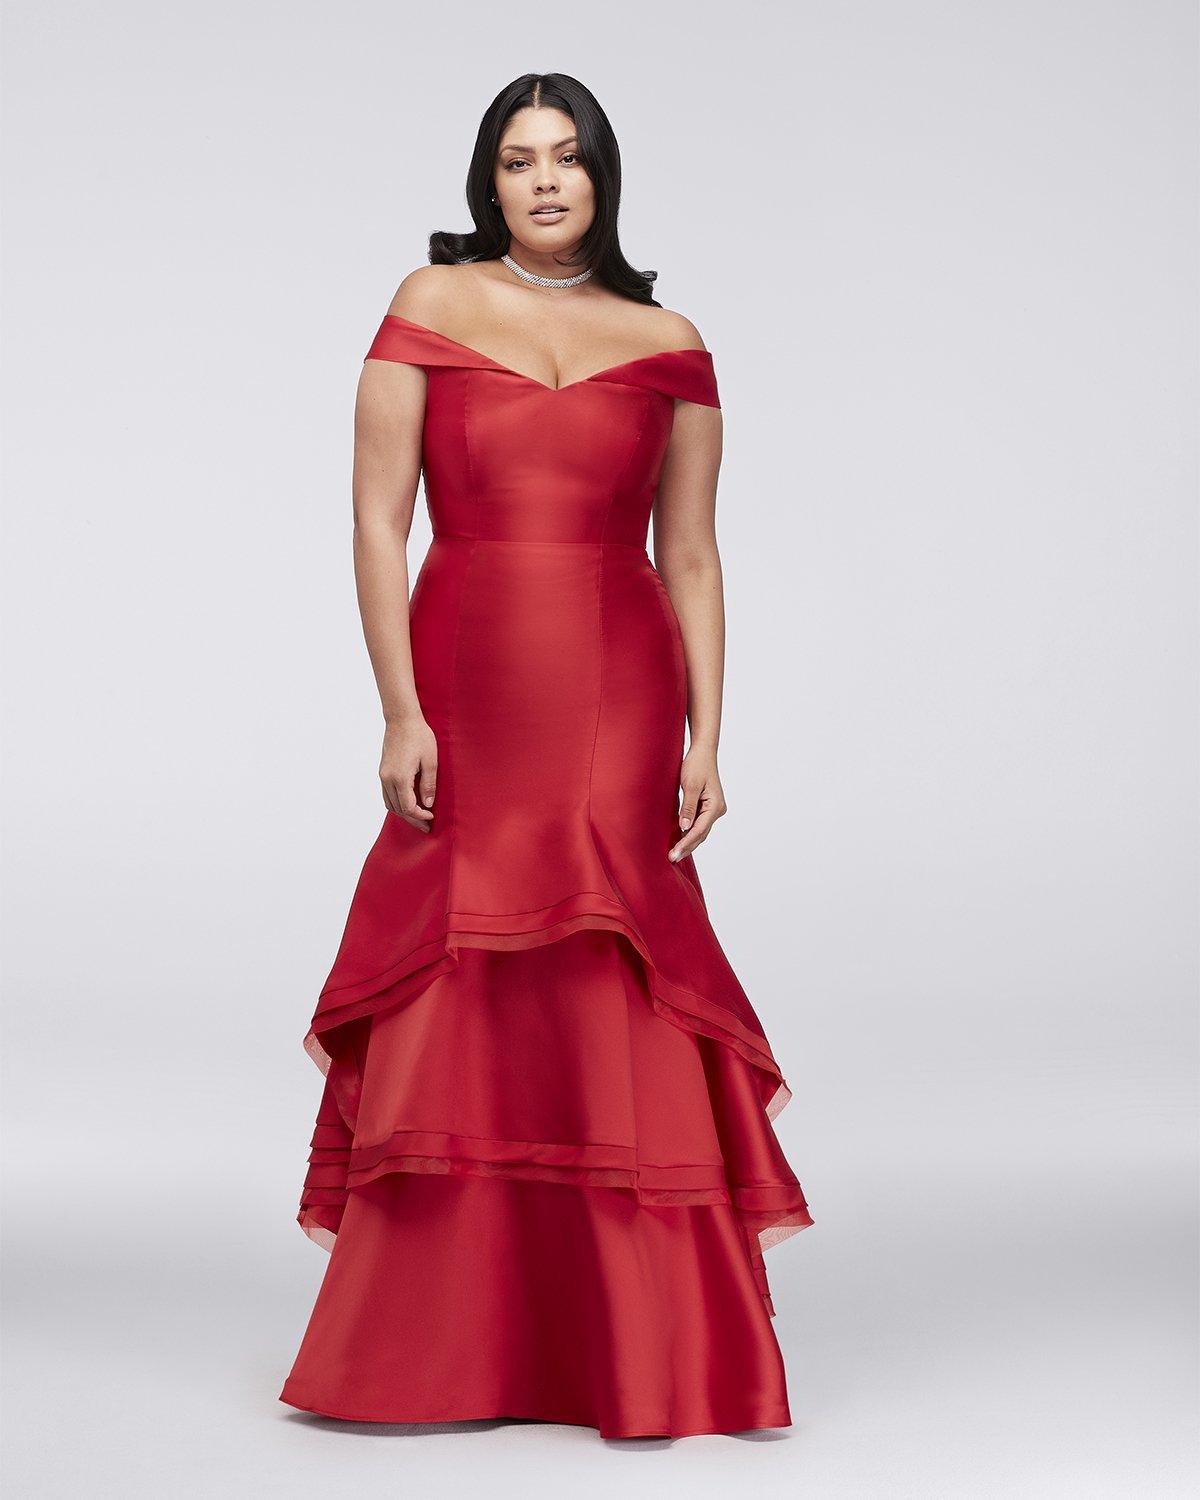 Vestidos de size': modelos para lucir cuerpazo - bodas.com.mx